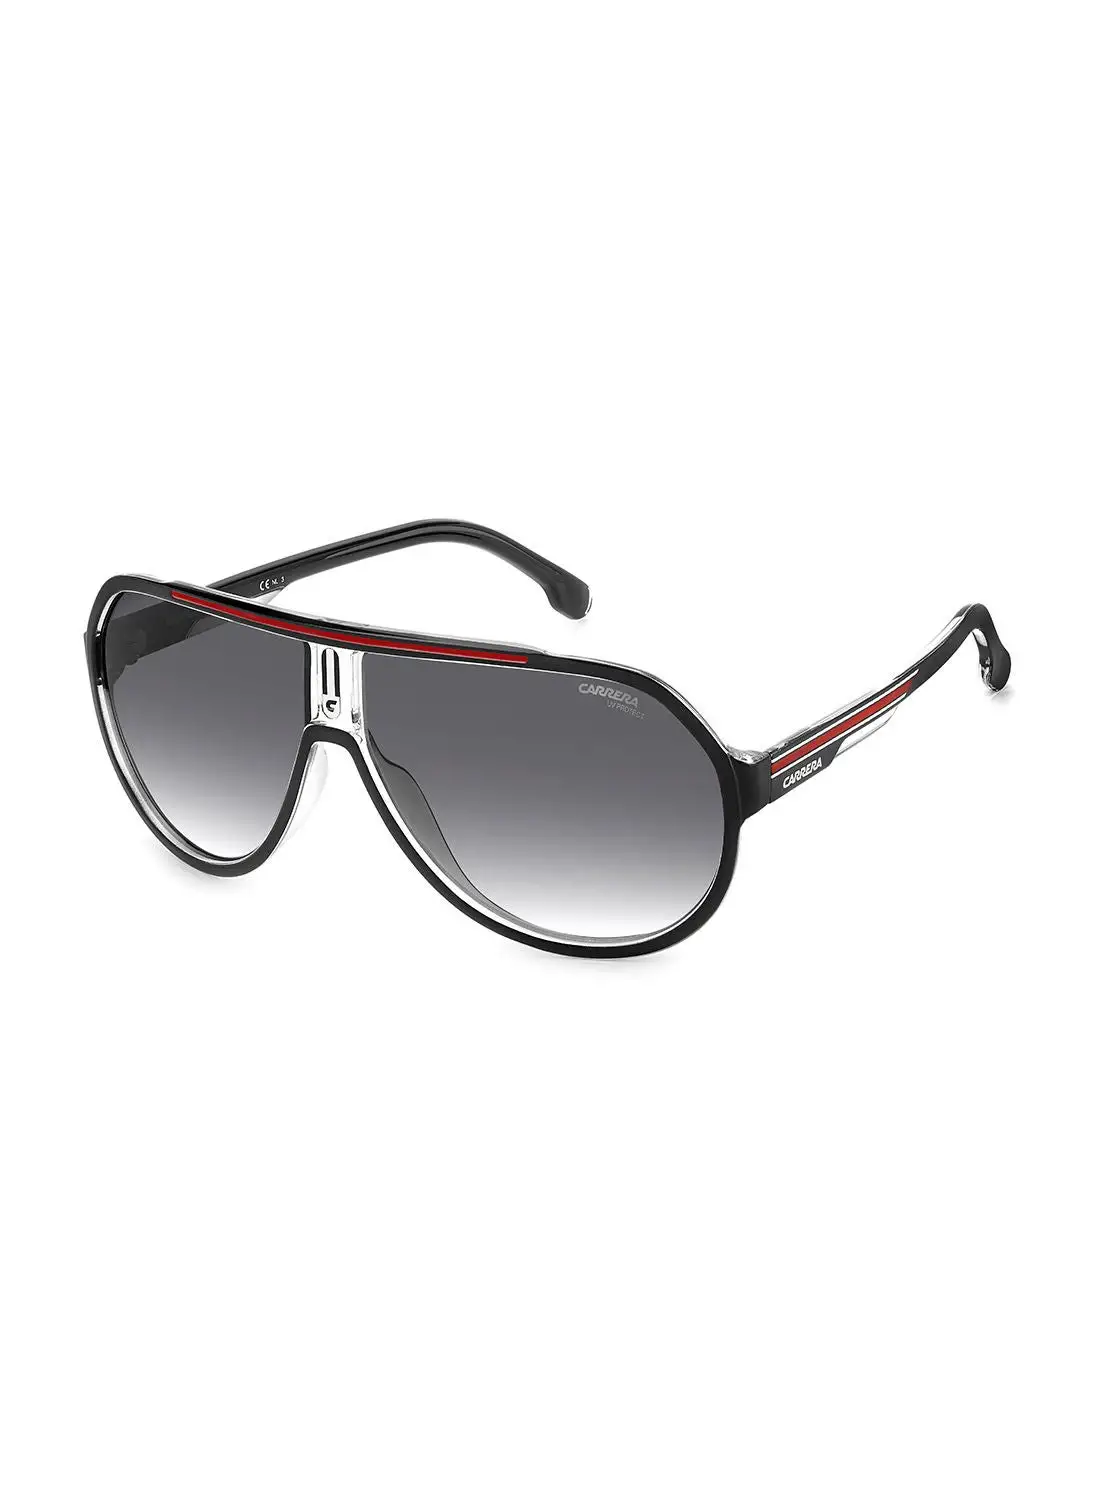 نظارة شمسية بايلوت للحماية من الأشعة فوق البنفسجية للرجال من كاريرا - Carrera 1057/S أسود/أحمر 64 - مقاس العدسة: 64 ملم